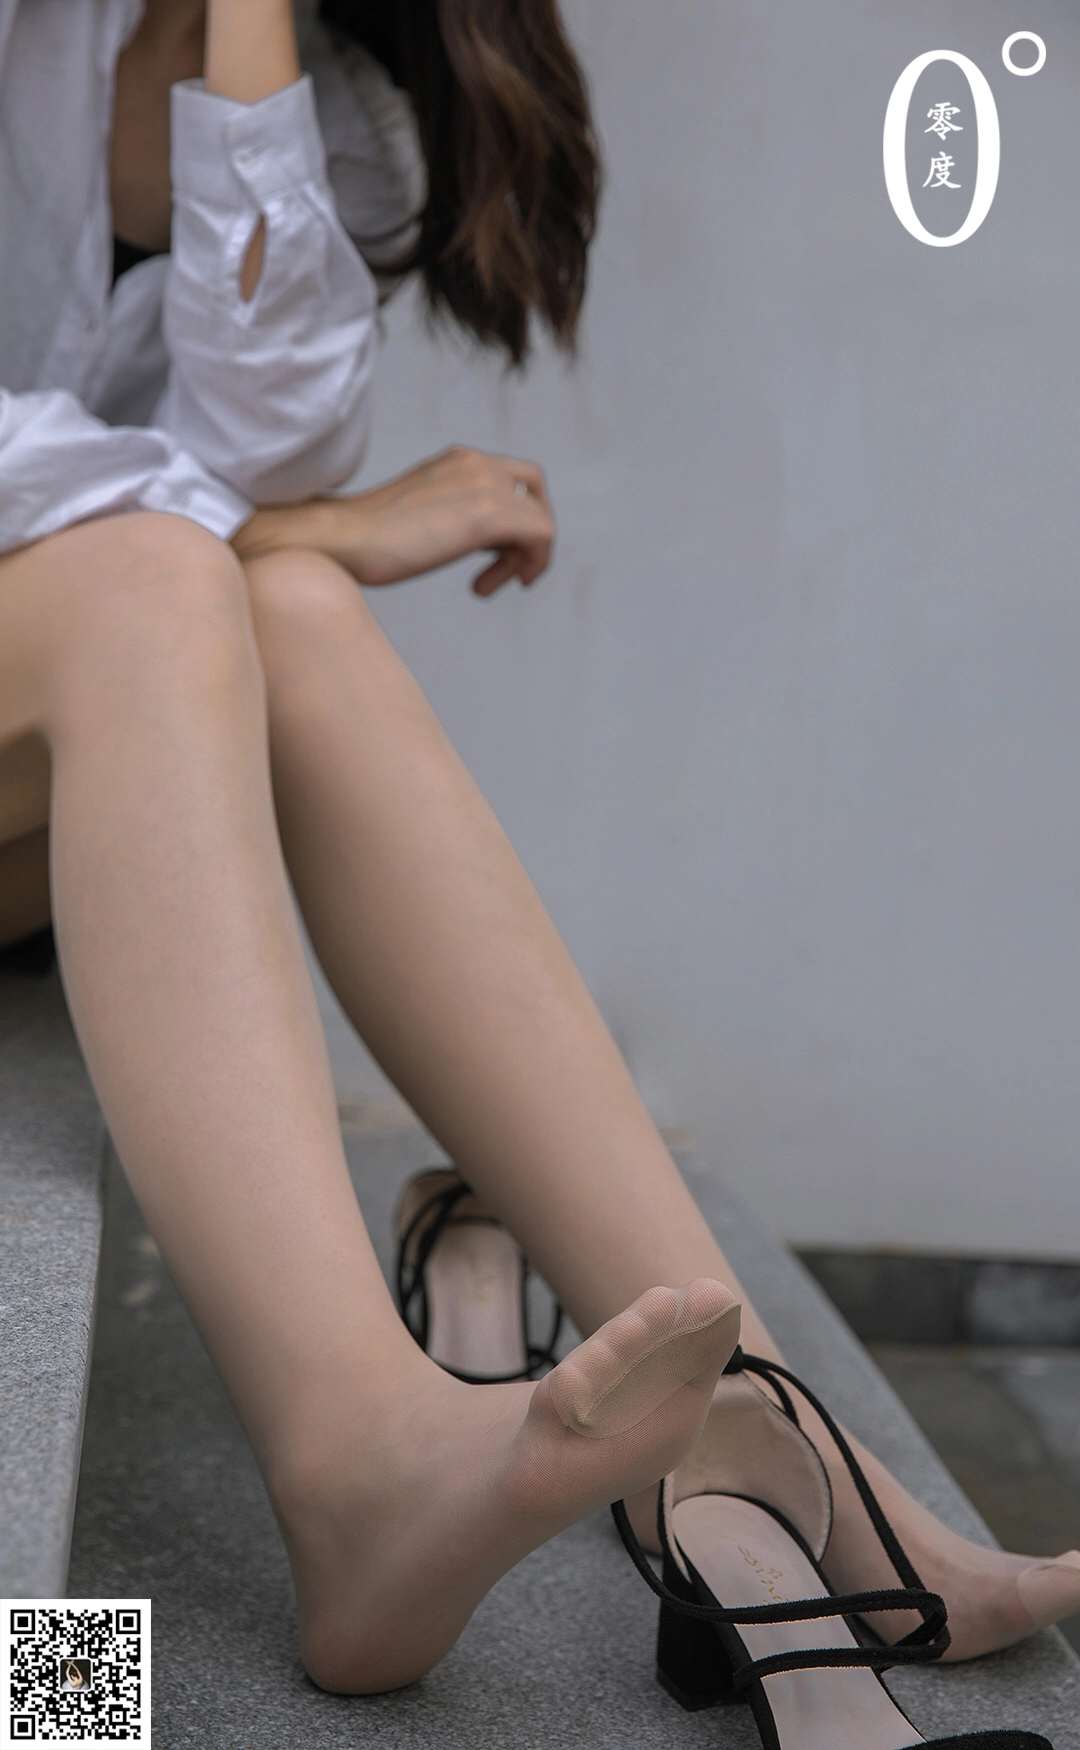 [LD零度摄影]NO.020 模特青草 白色衬衫与灰色短裙加肉丝美腿玉足性感私房写真集,